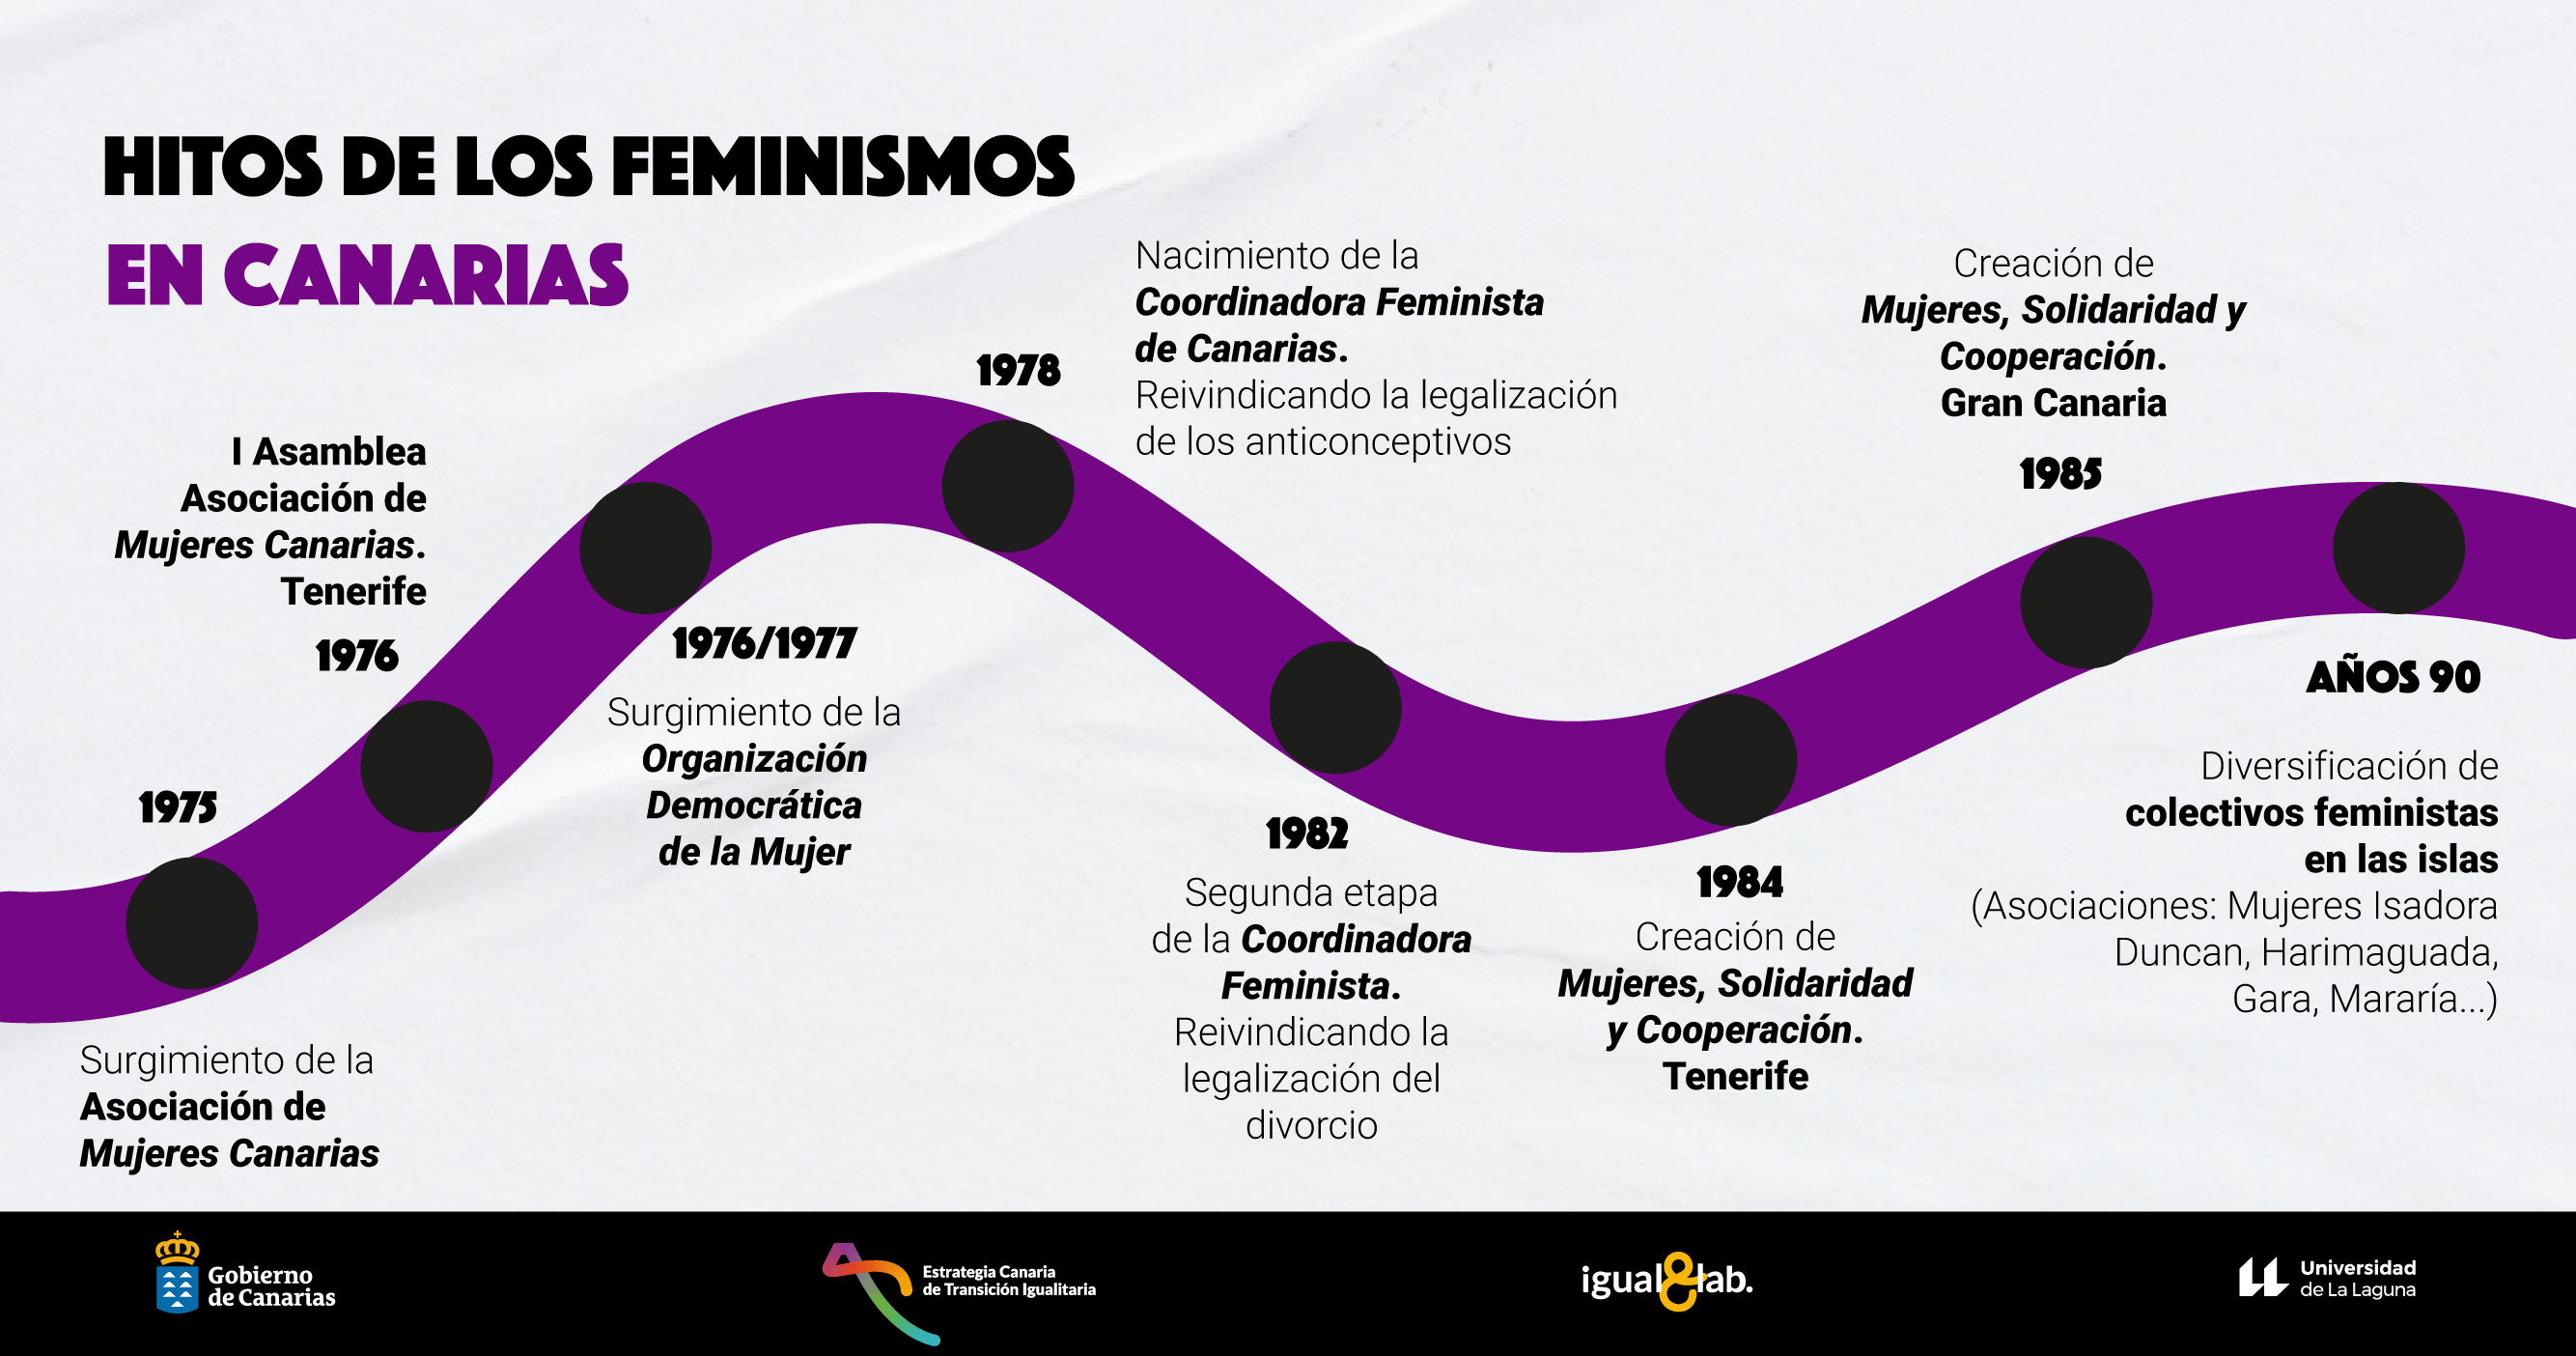 Hitos de los feminismos en Canarias